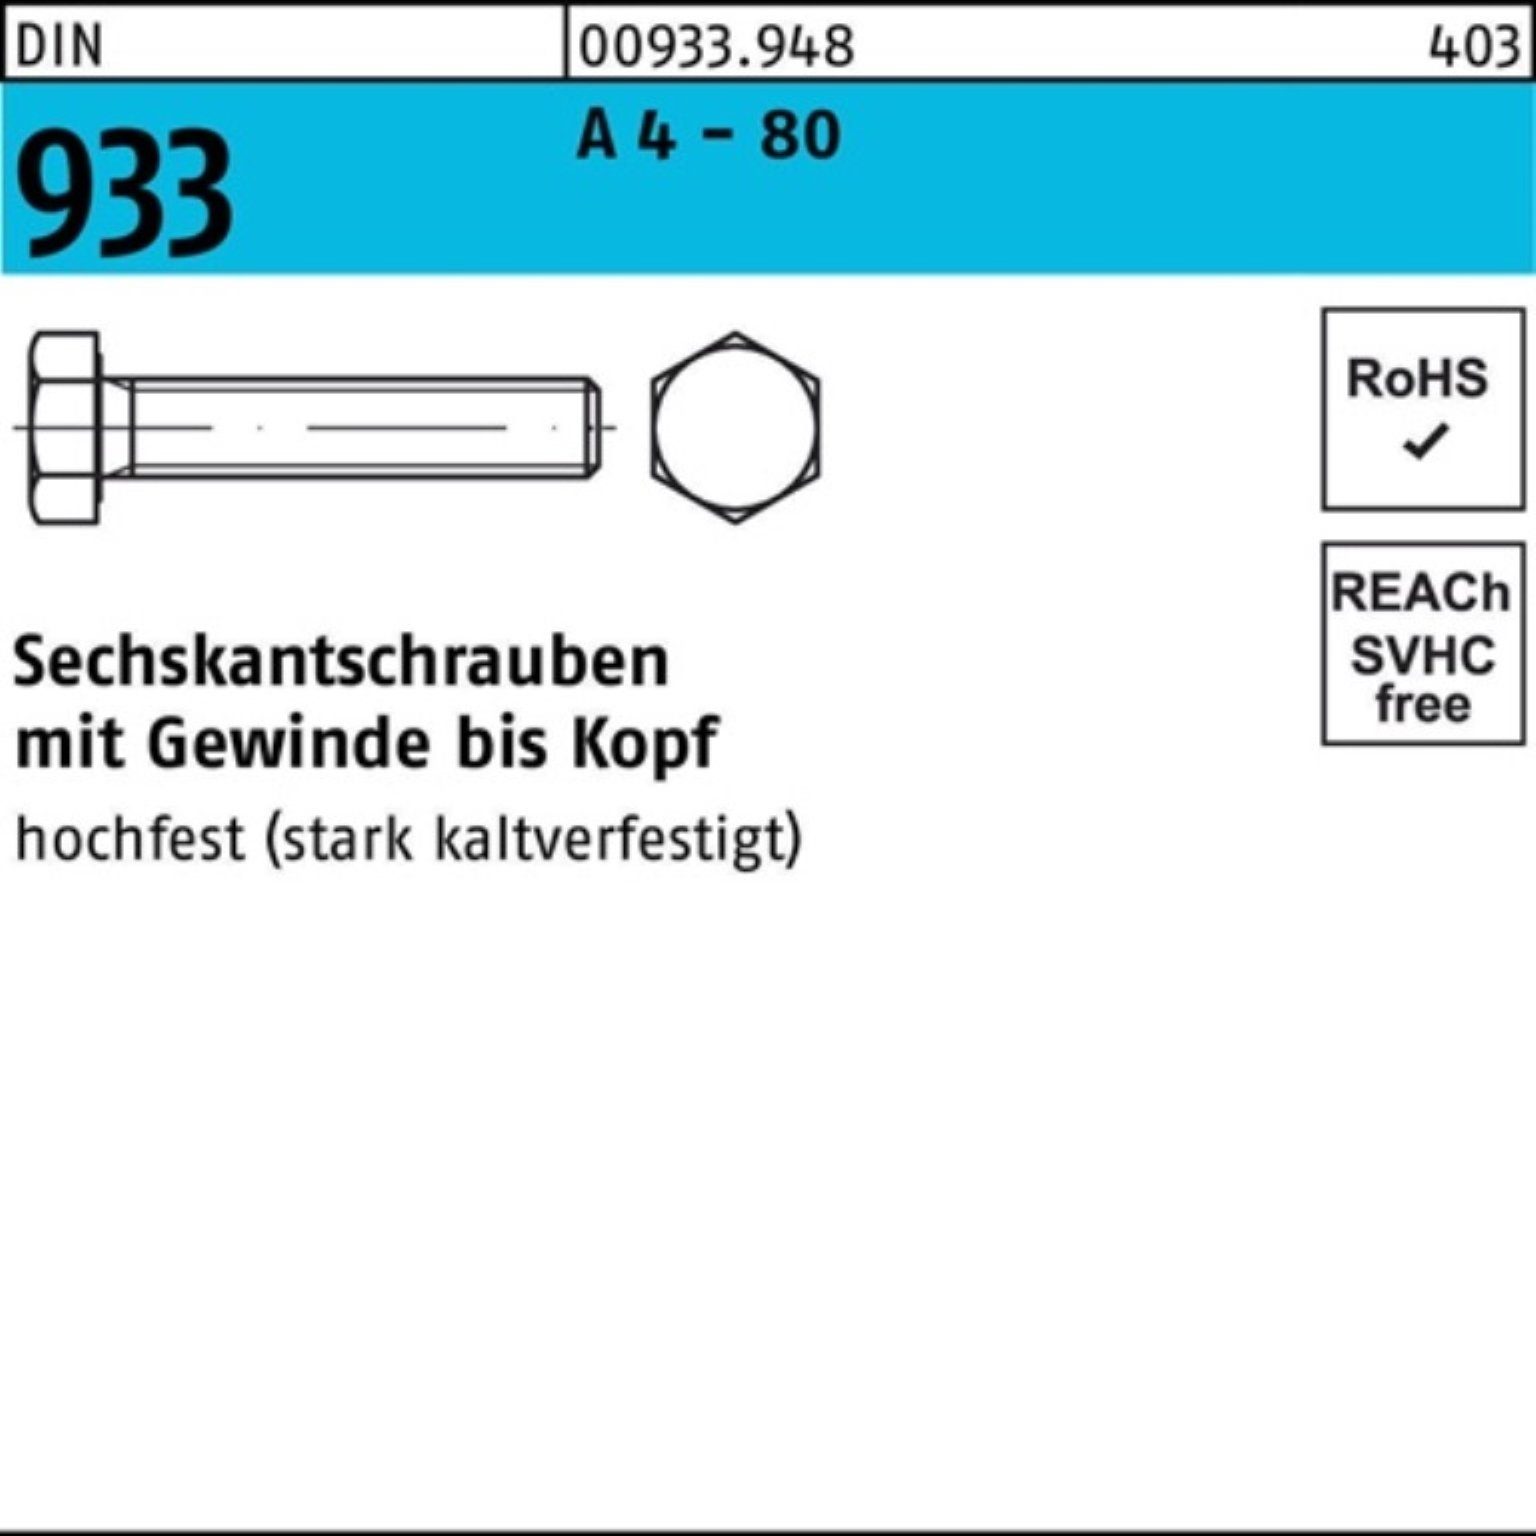 Reyher Sechskantschraube 100er Pack Sechskantschraube DIN 933 VG M12x 100 A 4 - 80 1 Stück DIN